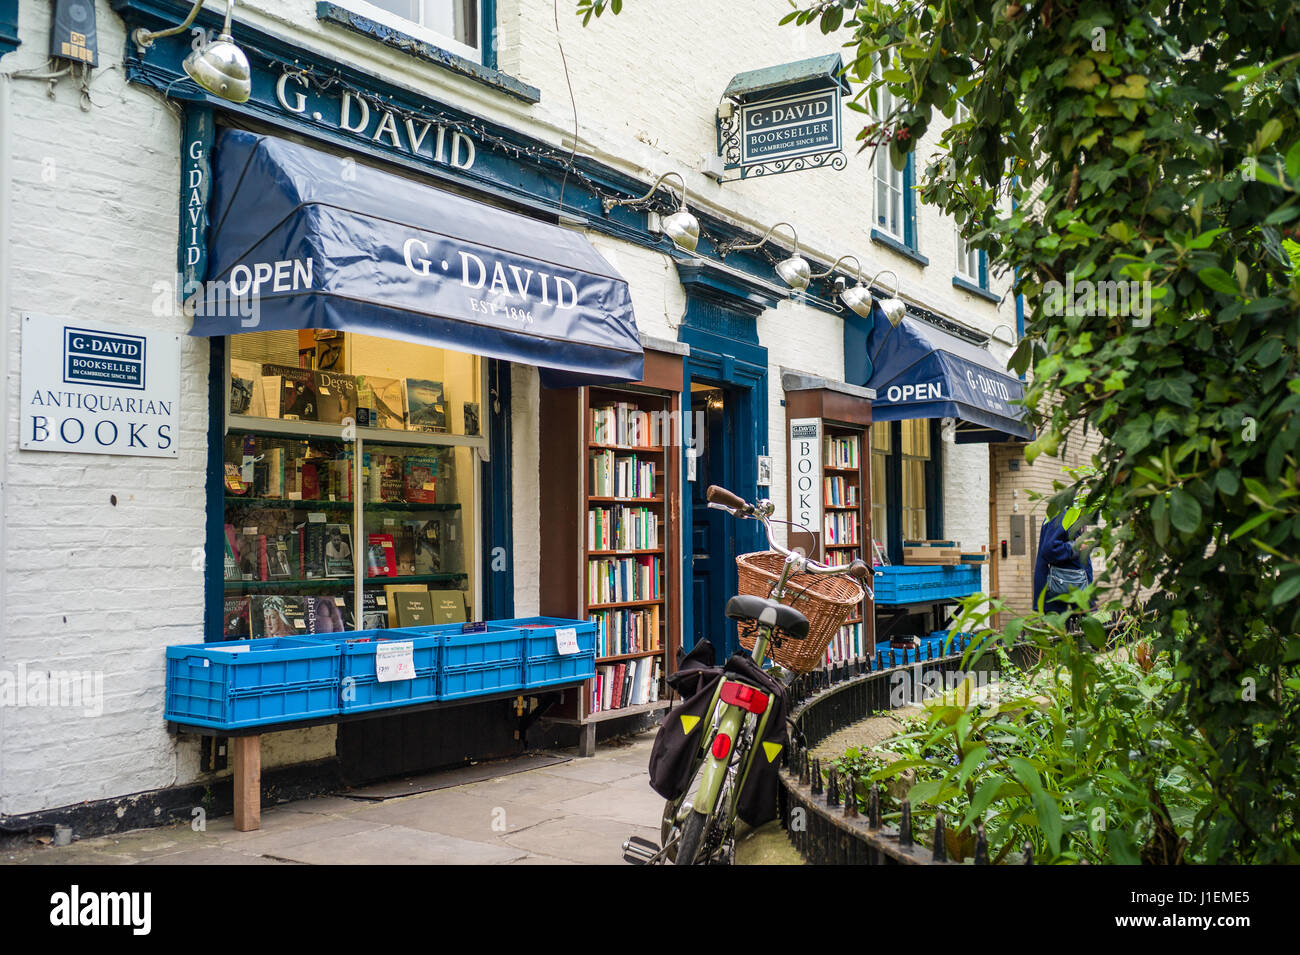 Librairie de livres anciens G David à St Edwards Passage dans le centre historique de Cambridge, au Royaume-Uni. La boutique a été créée par Gustave David en 1896. Banque D'Images